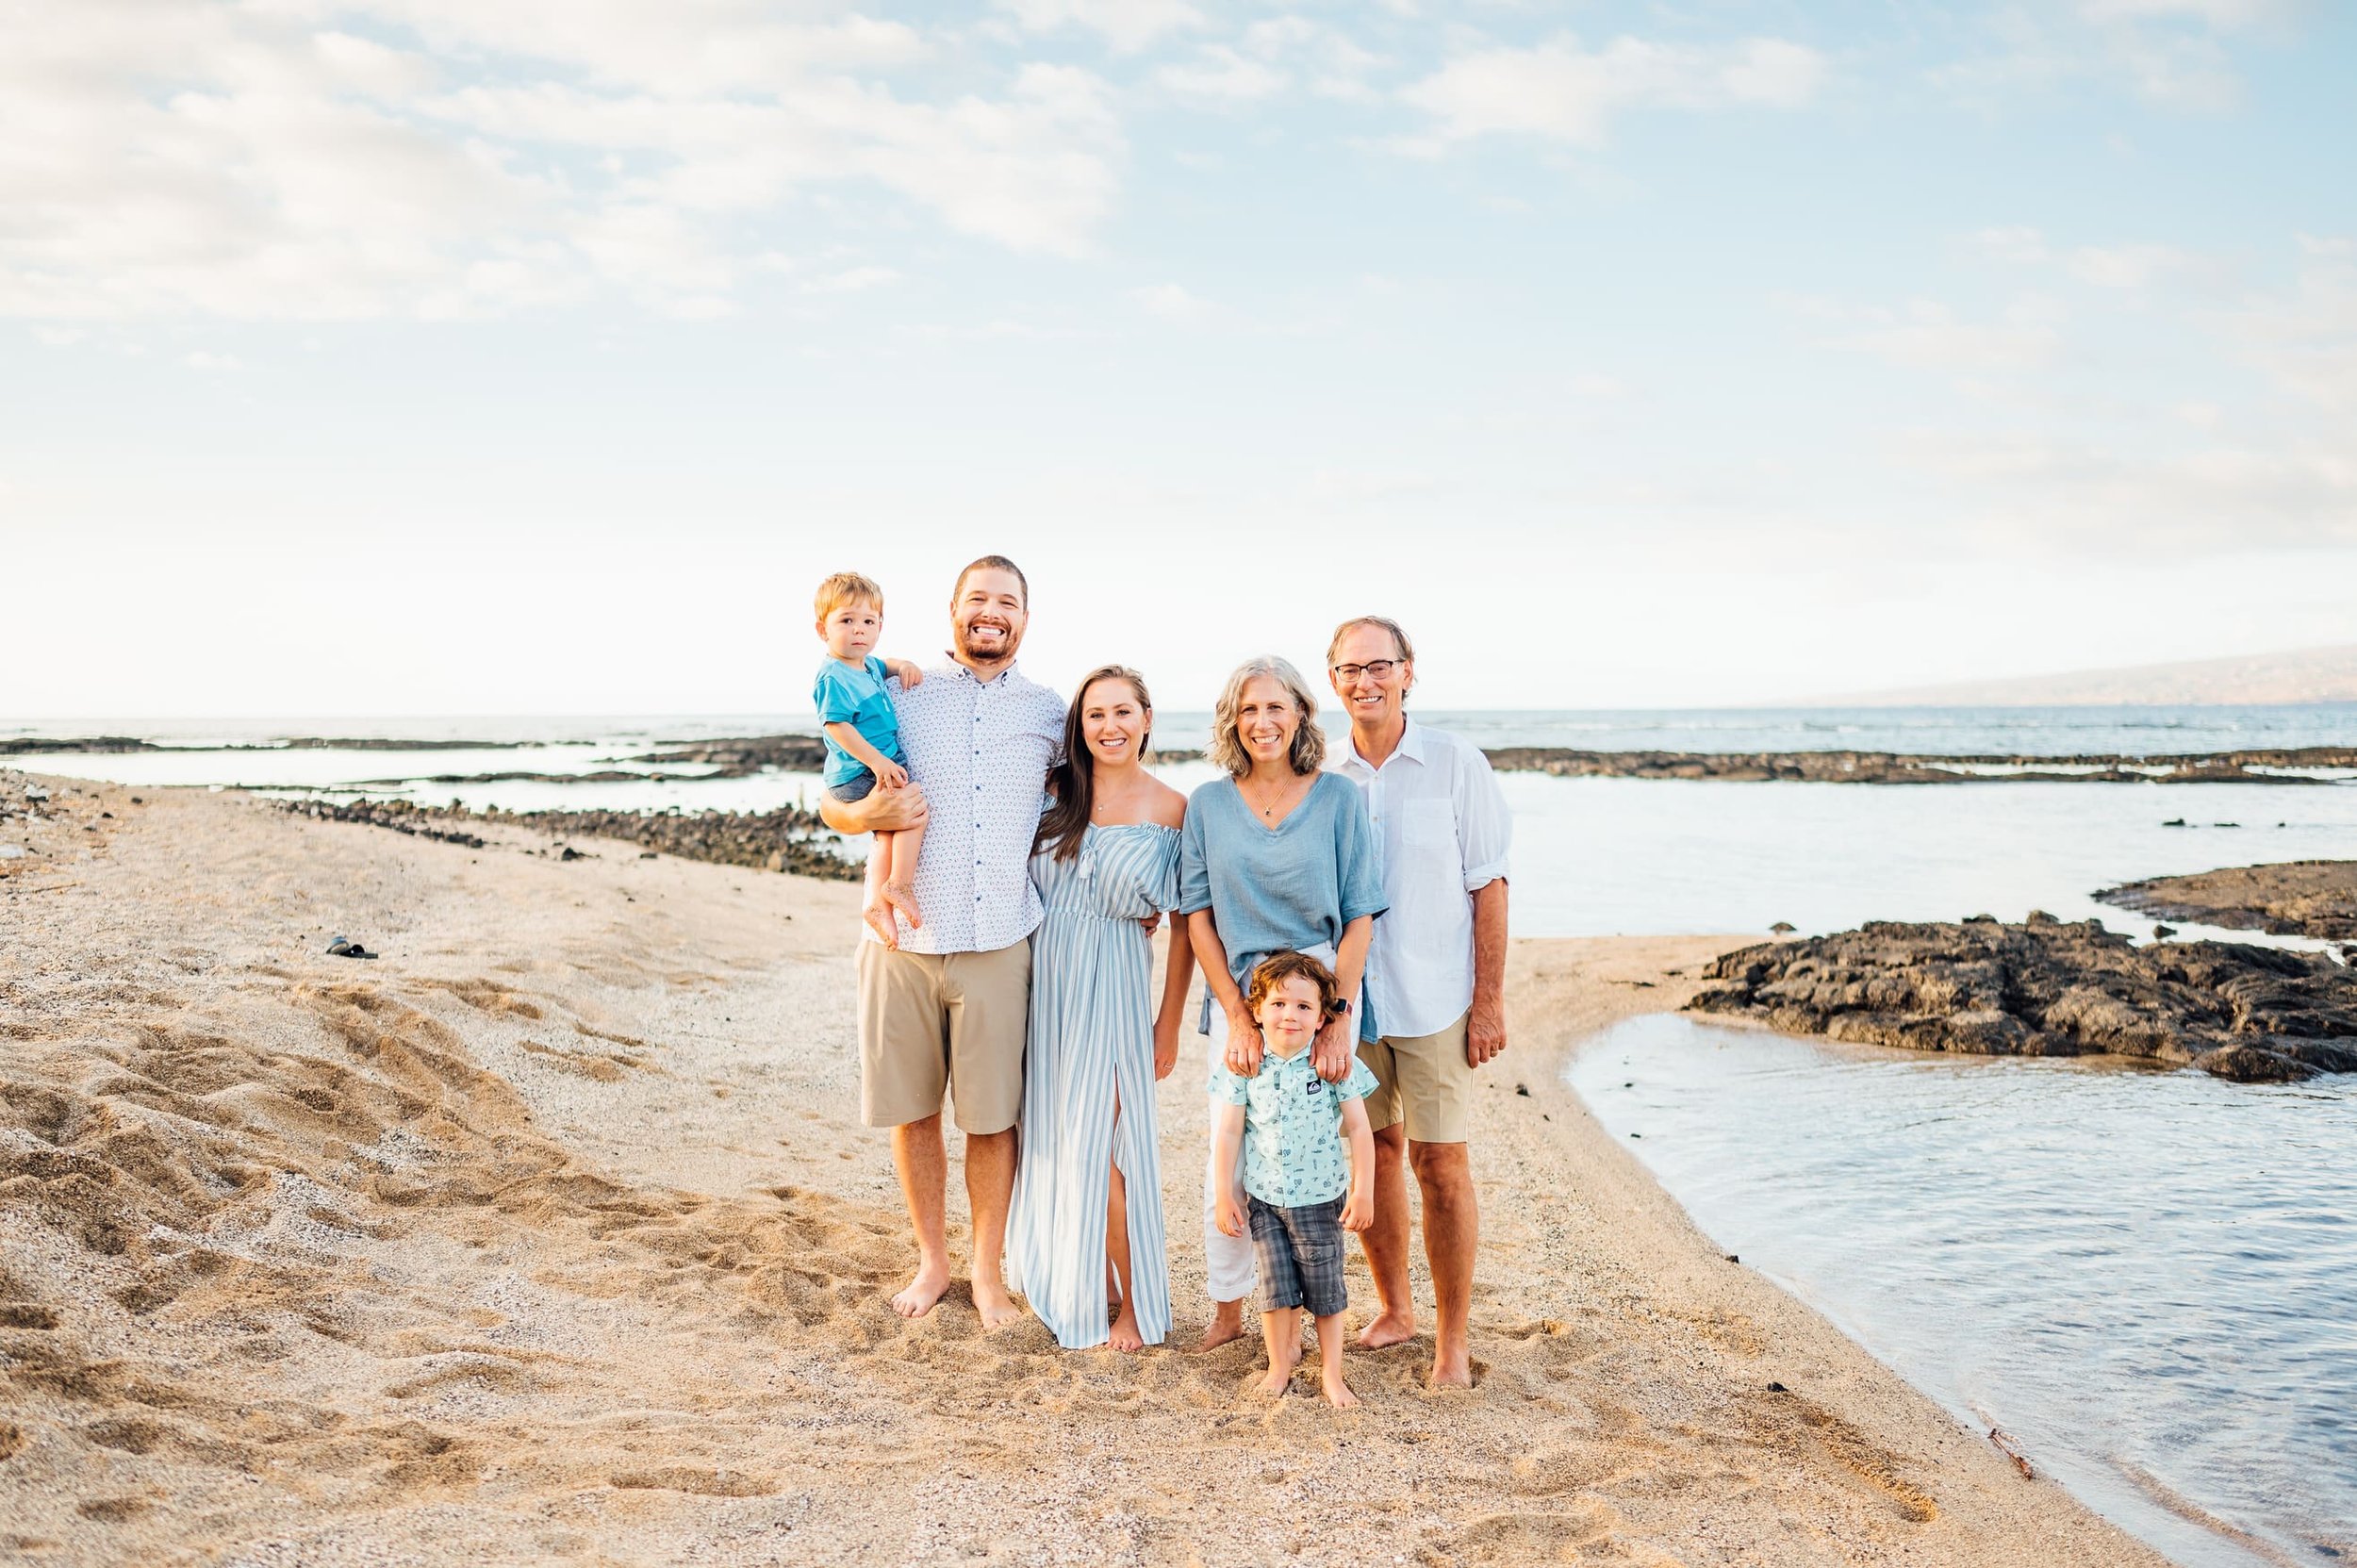 kailua-kona-family-vacation-photographers-1.jpg